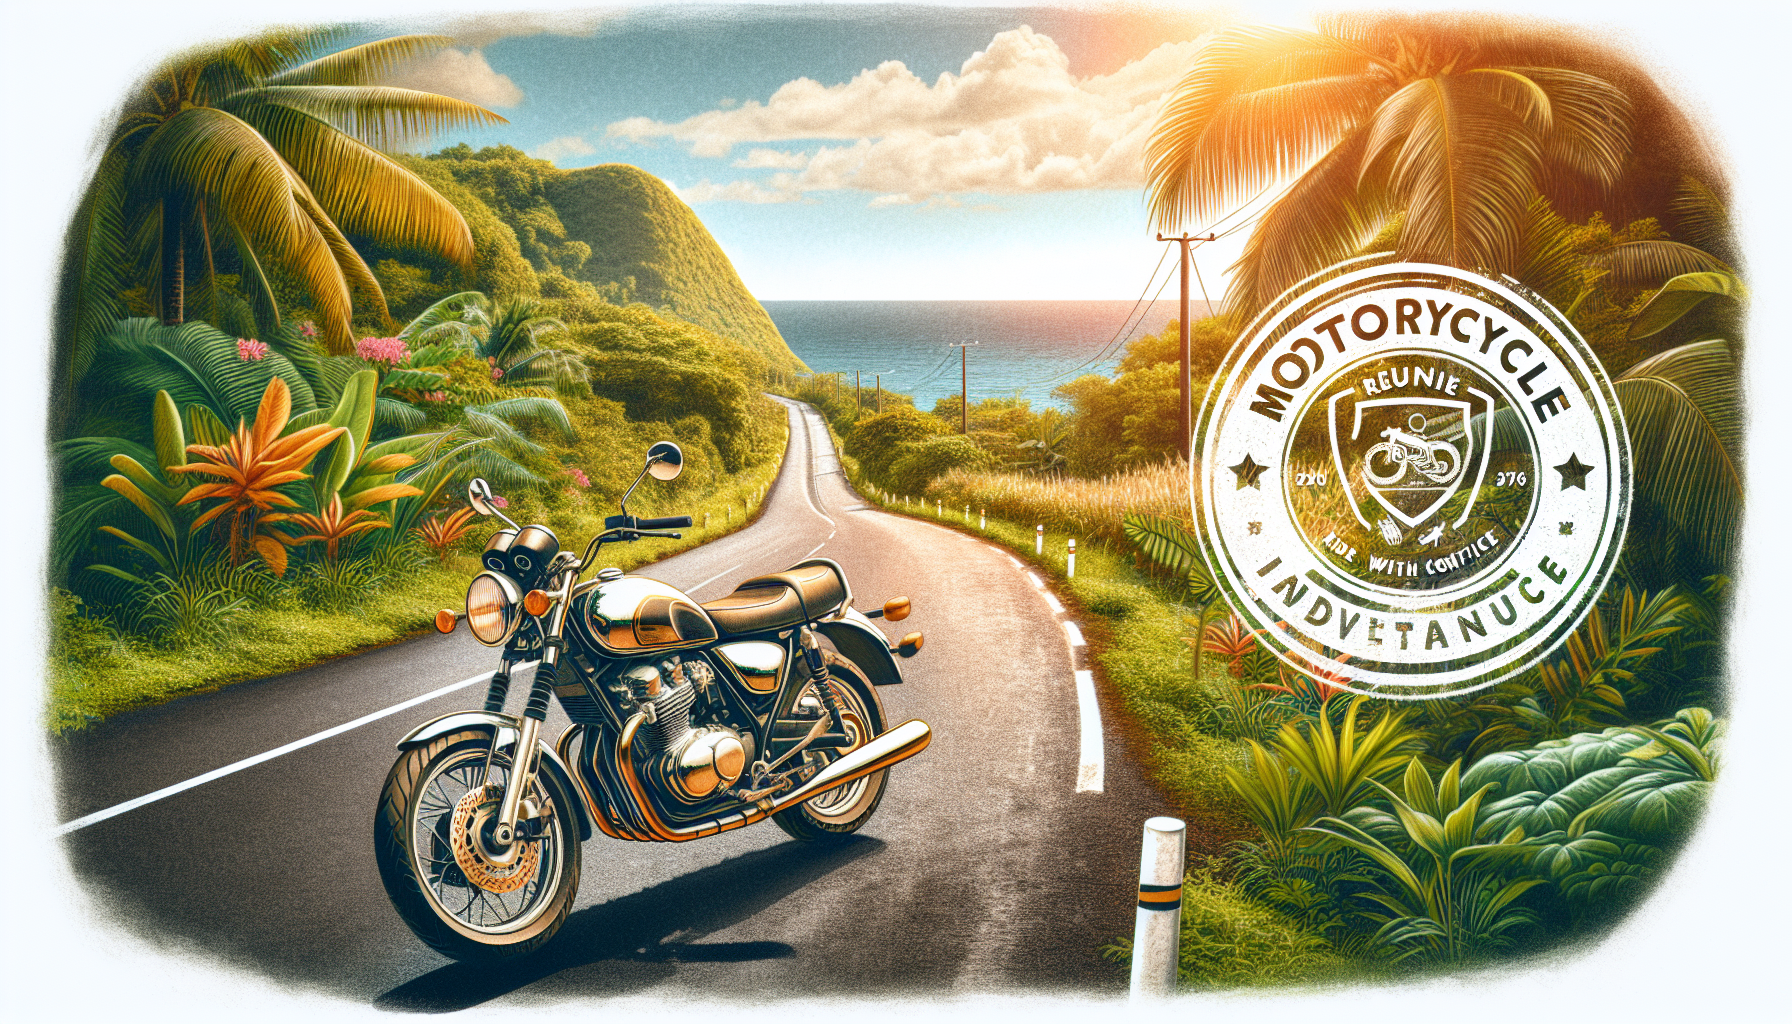 découvrez nos conseils pour choisir la meilleure assurance moto à la réunion et assurez votre sécurité sur les routes de l'île.